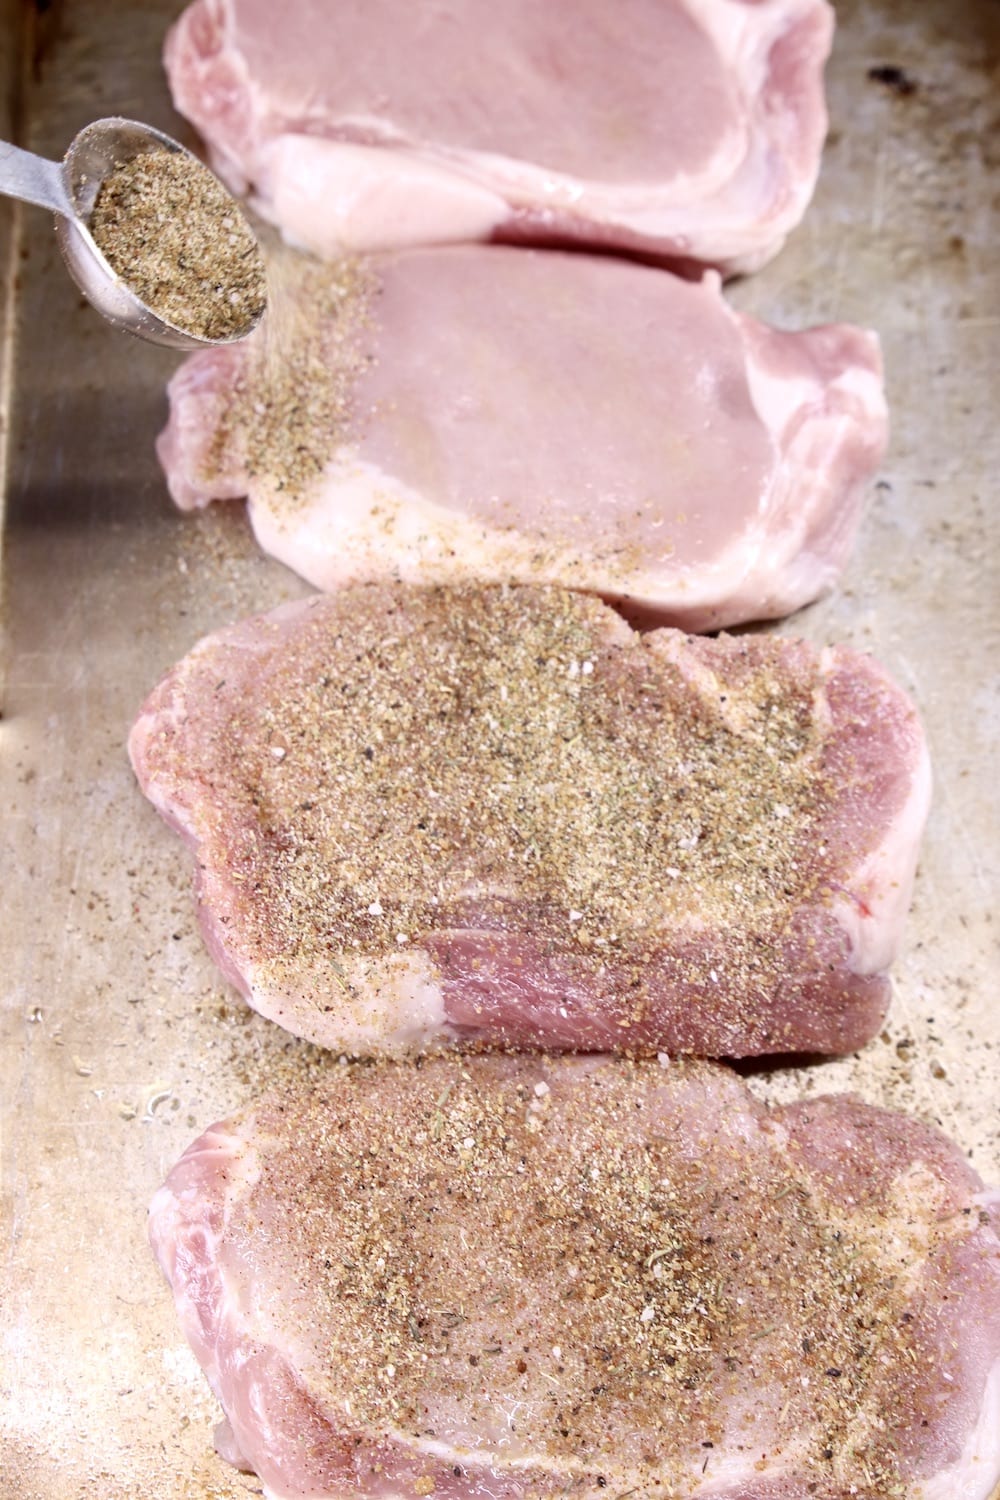 sprinkling dry rub on pork chops